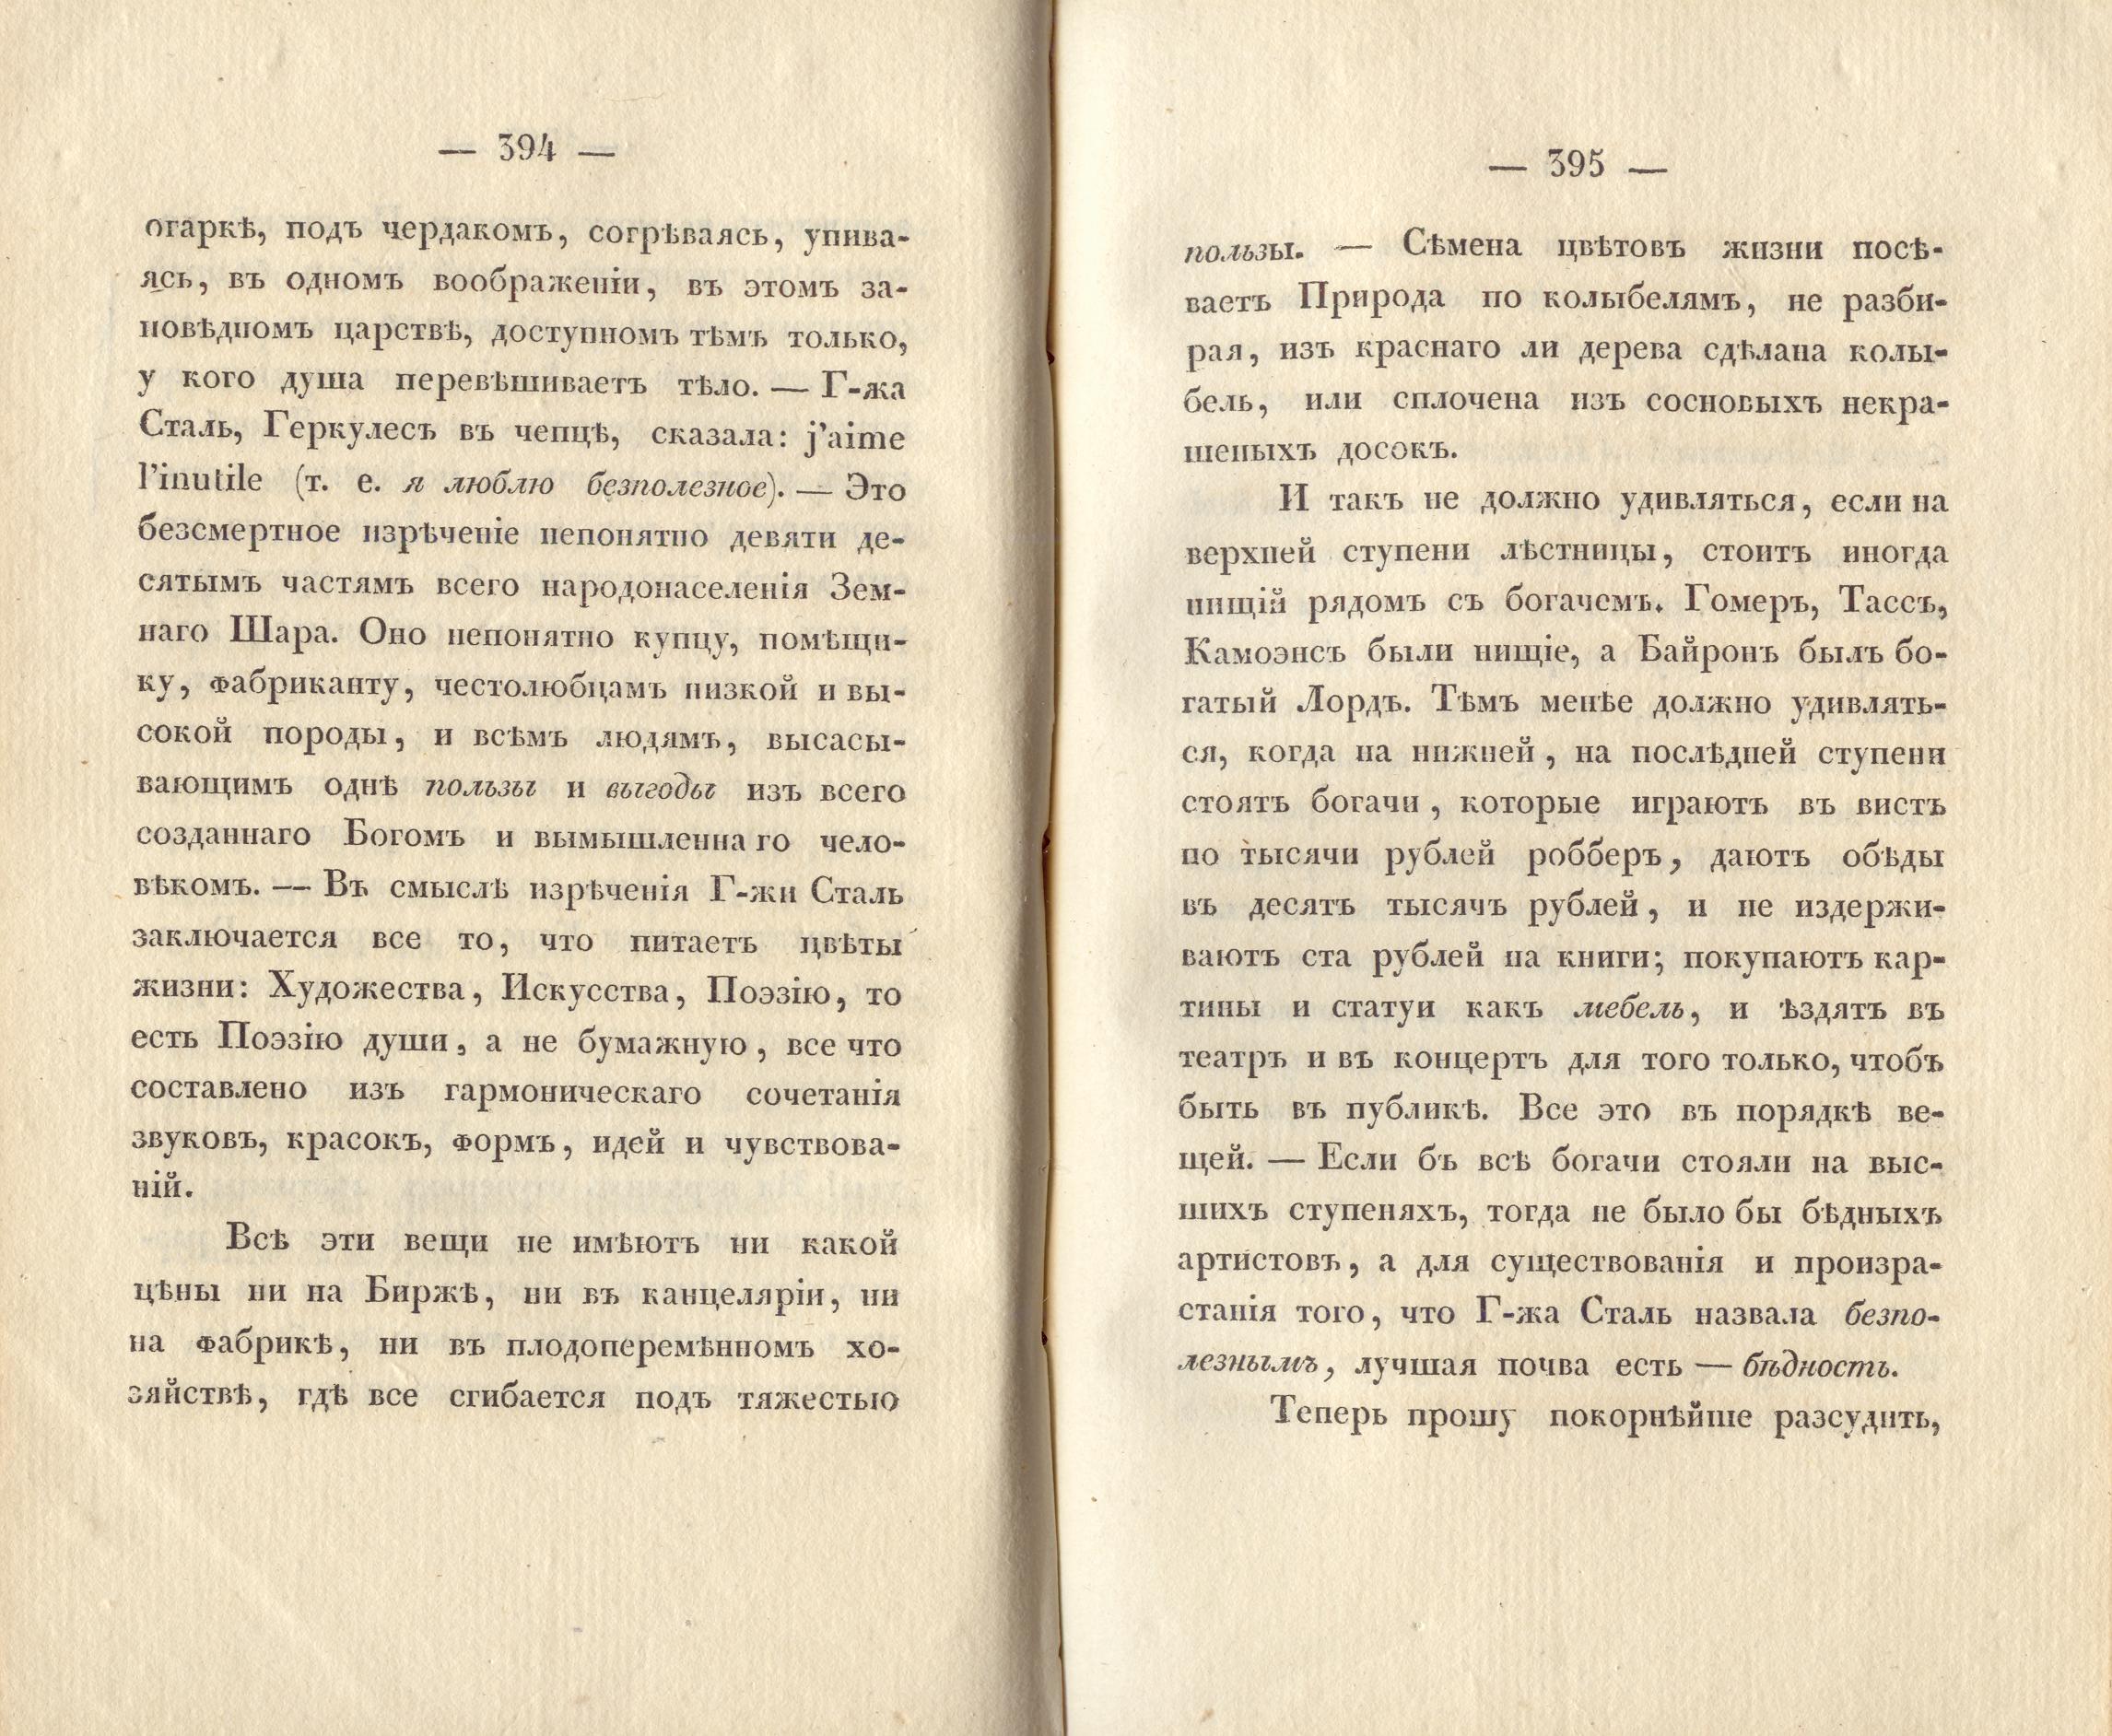 Сочиненія [2] (1836) | 201. (396-397) Основной текст